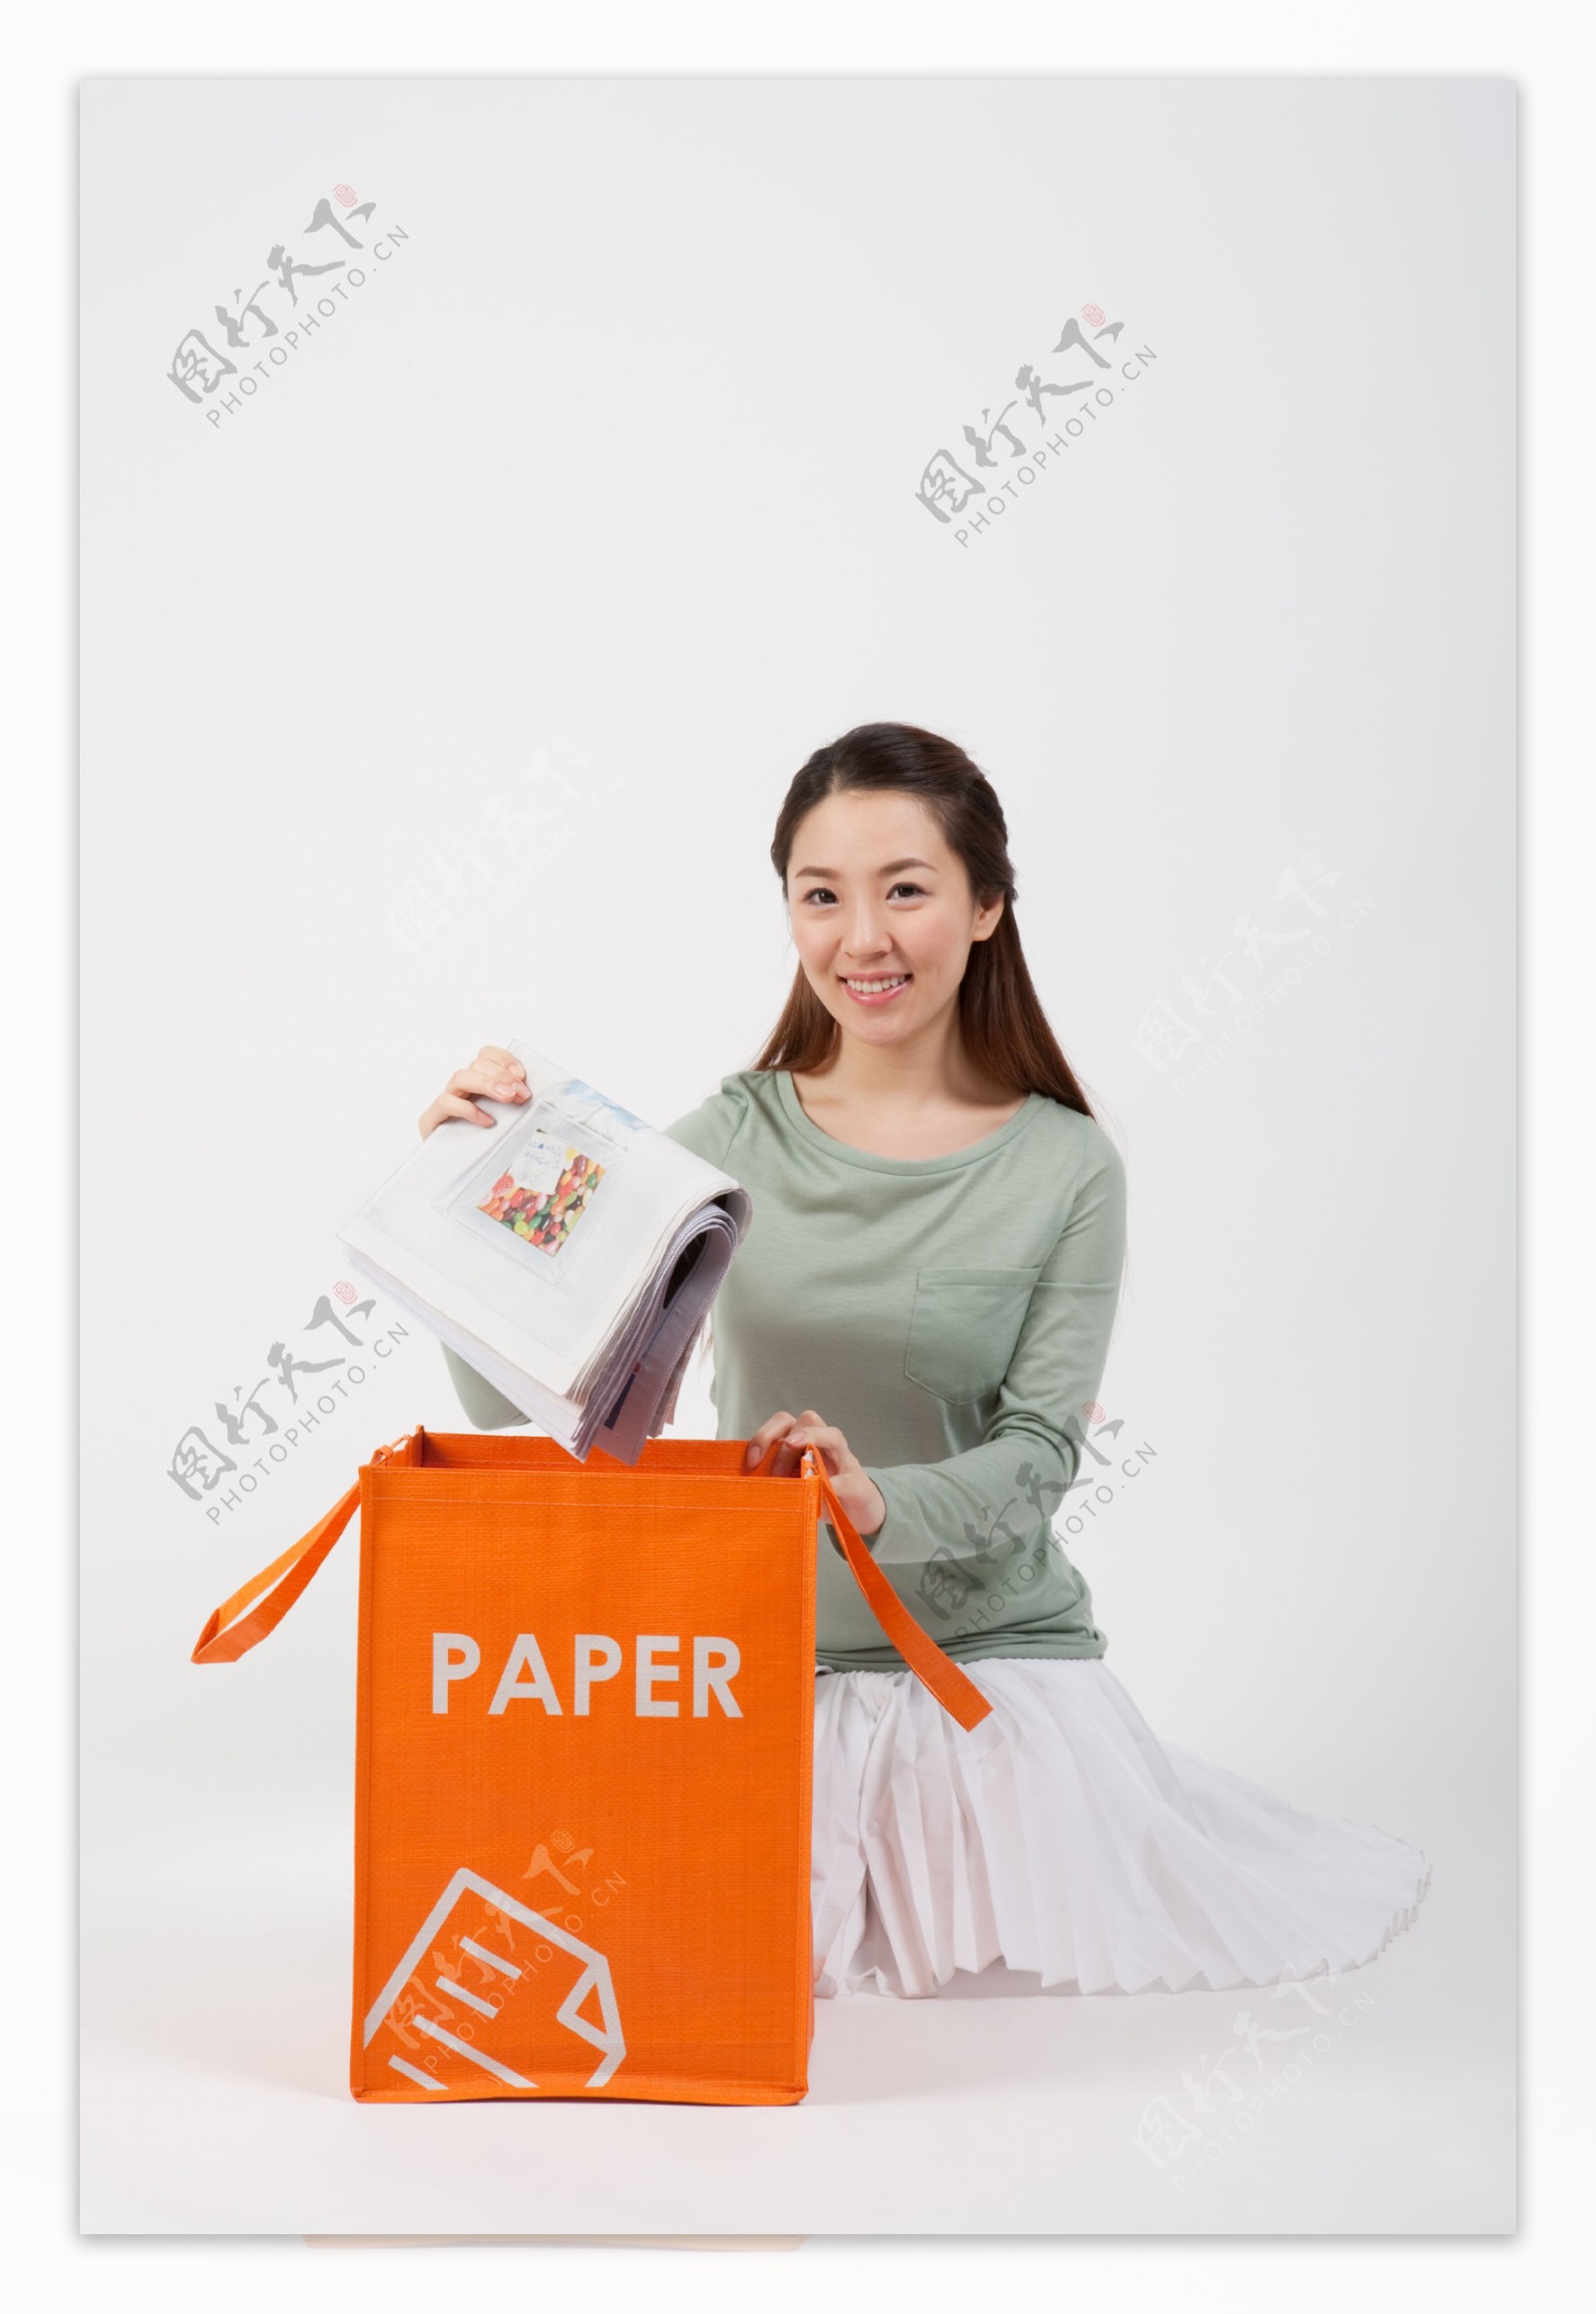 回收废纸的环保志愿者美女图片